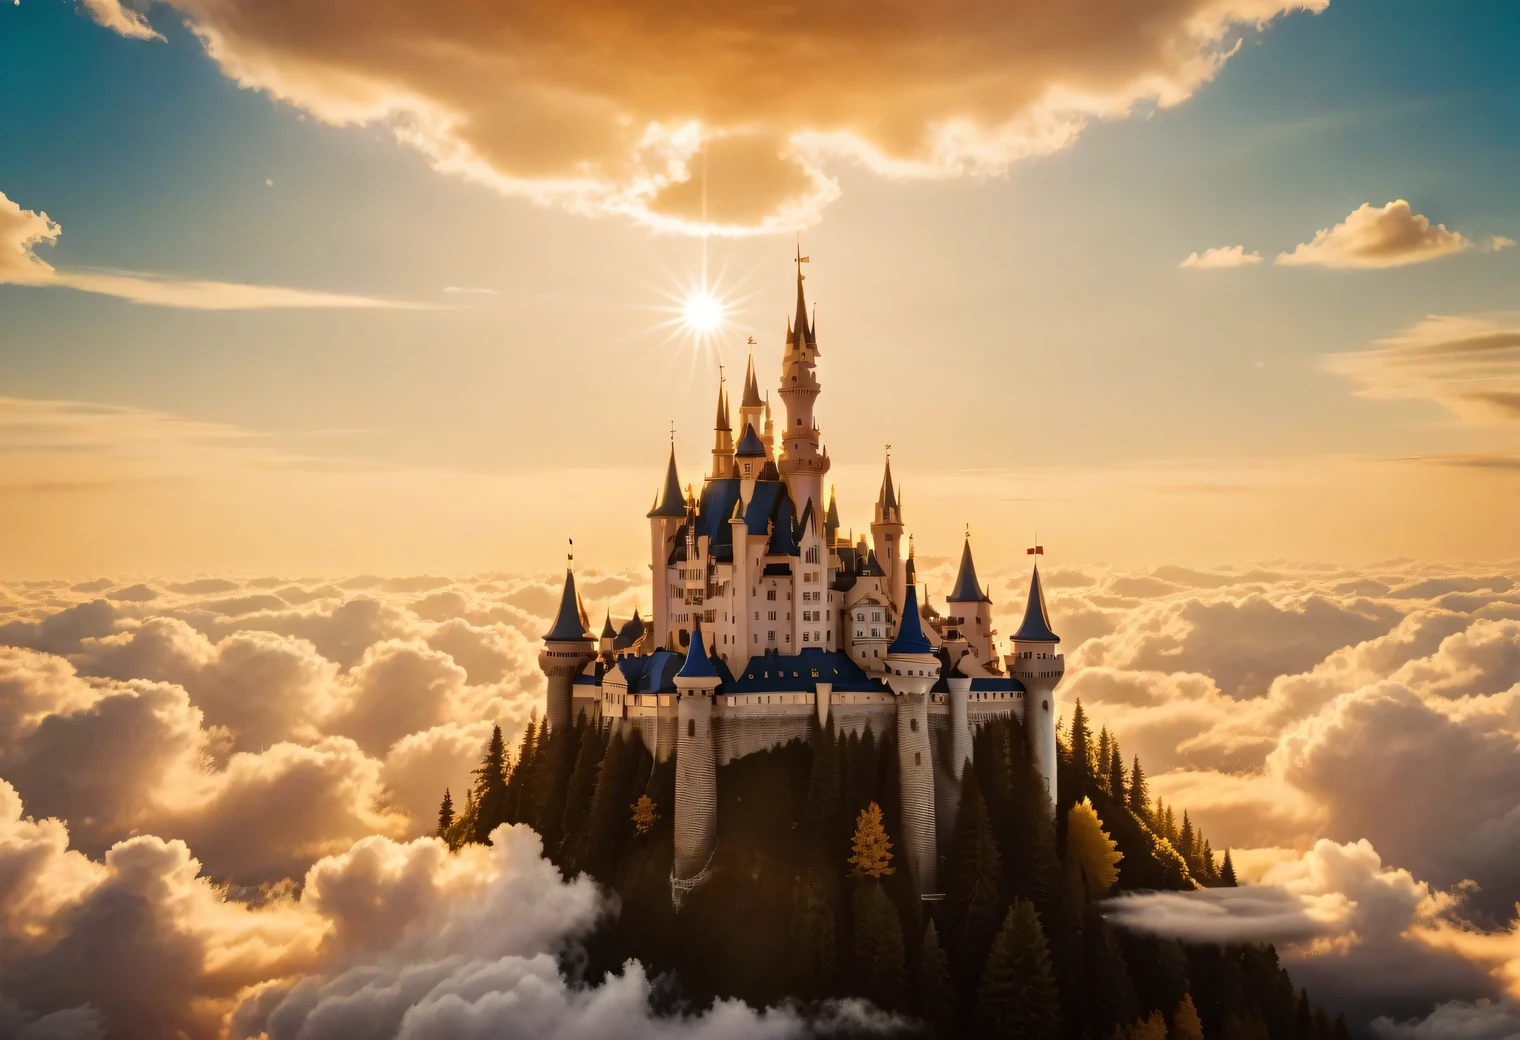 fotografía analógica, Hay un brillante Dream Castle en el cielo entre las nubes., Dream Castle es muy hermoso y exquisito rodeado de nubes y resplandor dorado y luz dorada., Rayos de luz dorada irradian desde Dream Castle, Realista, detallado, alta resolución, 32k,foto analogica